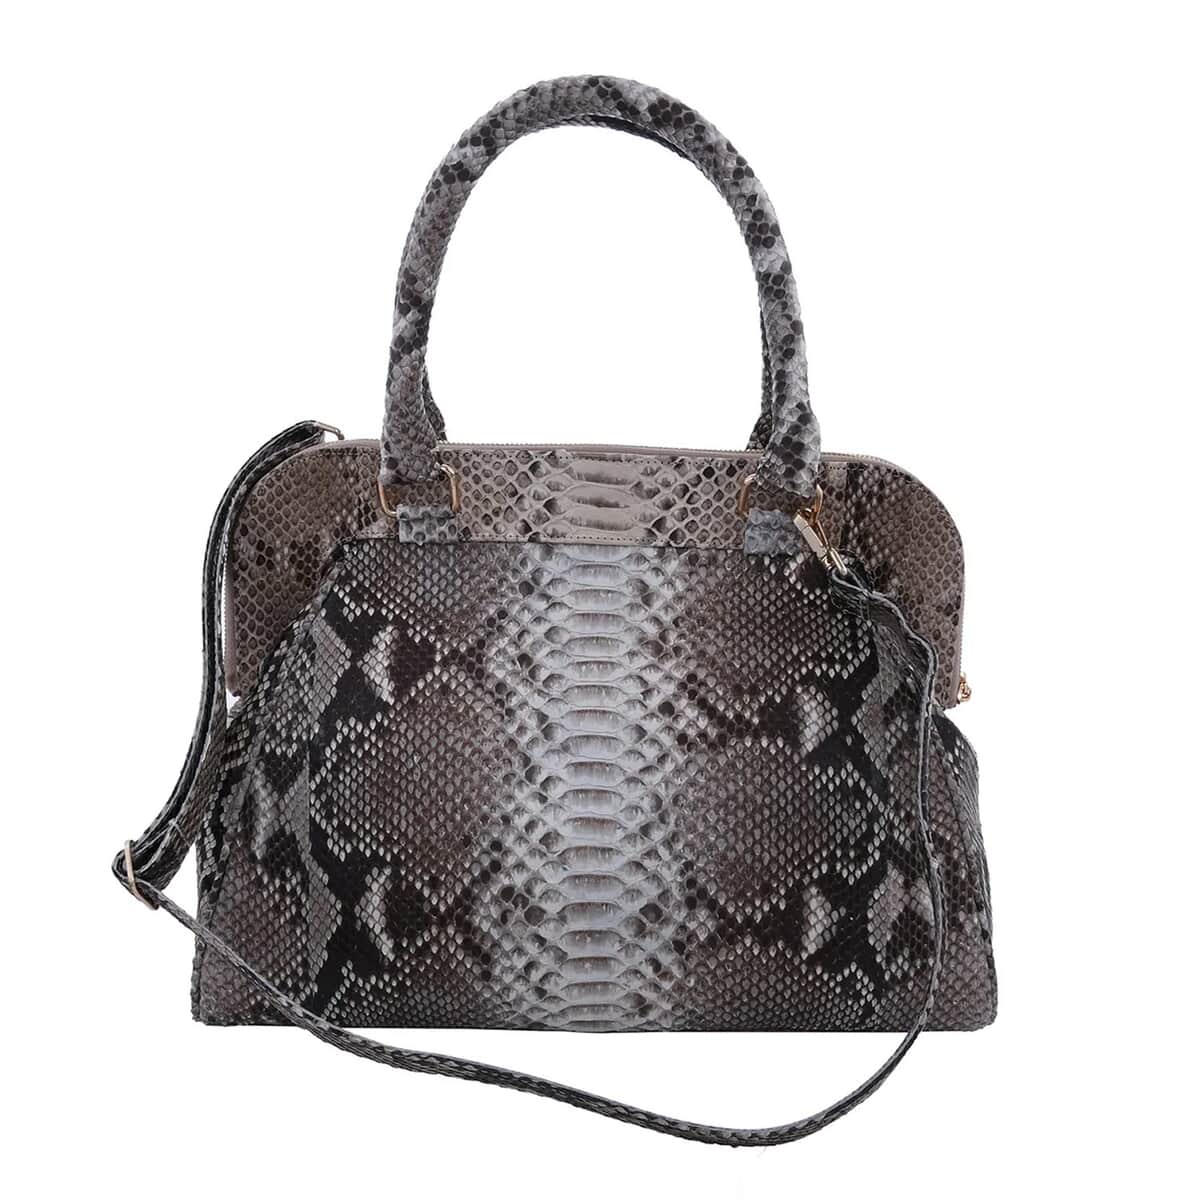 The Pelle Python Skin Bag Collection Natural Color 100% Genuine Python Leather Tote Bag for Women, Satchel Purse, Shoulder Handbag, Designer Tote Bag image number 0